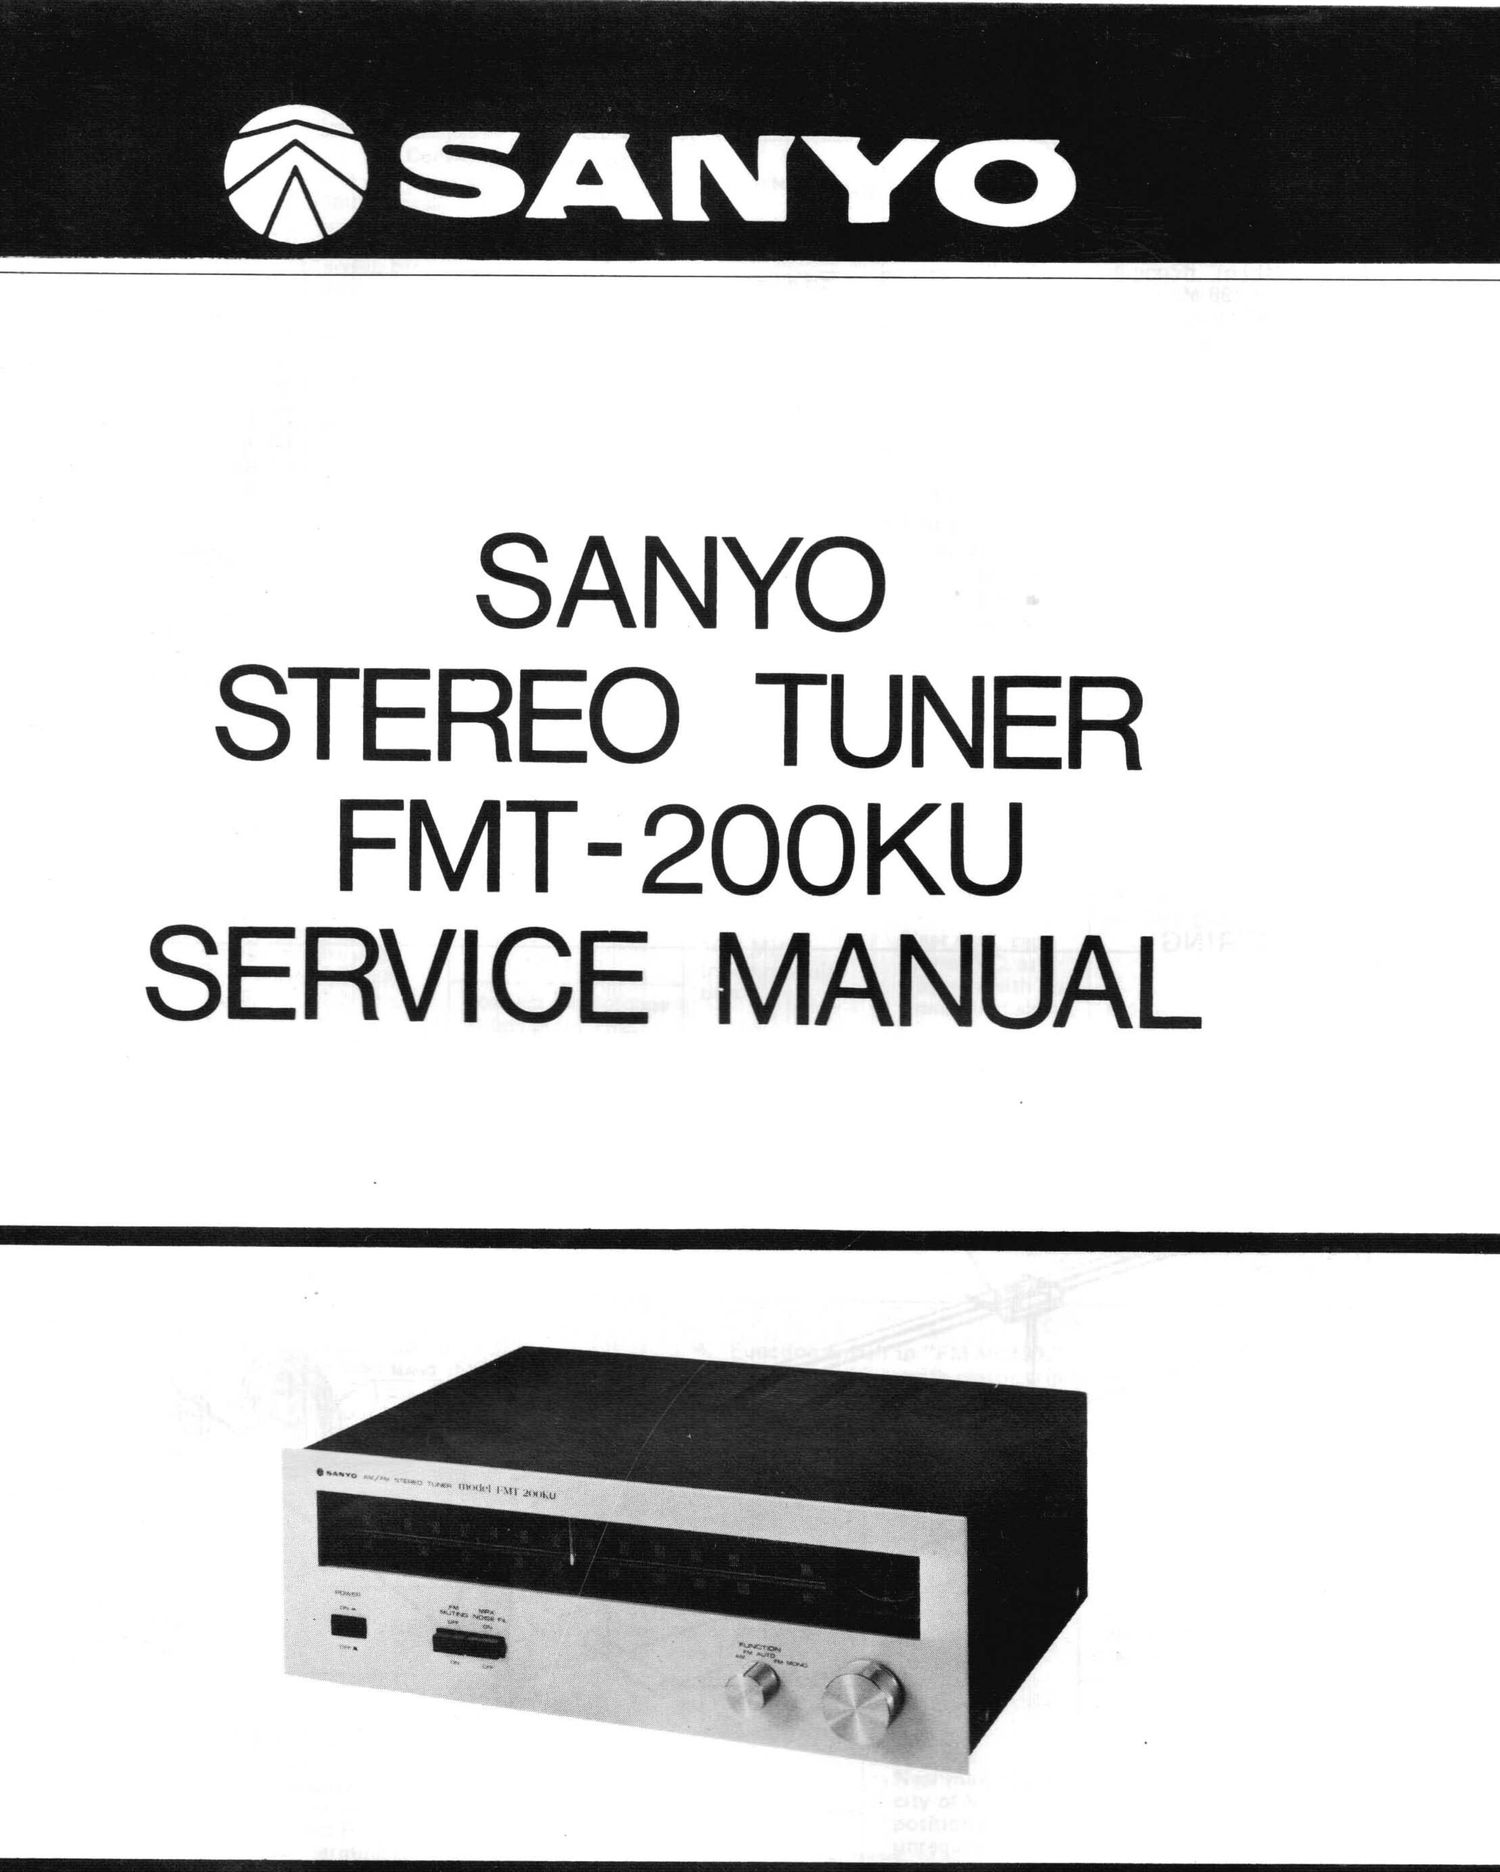 Sanyo FMT 200KU Service Manual